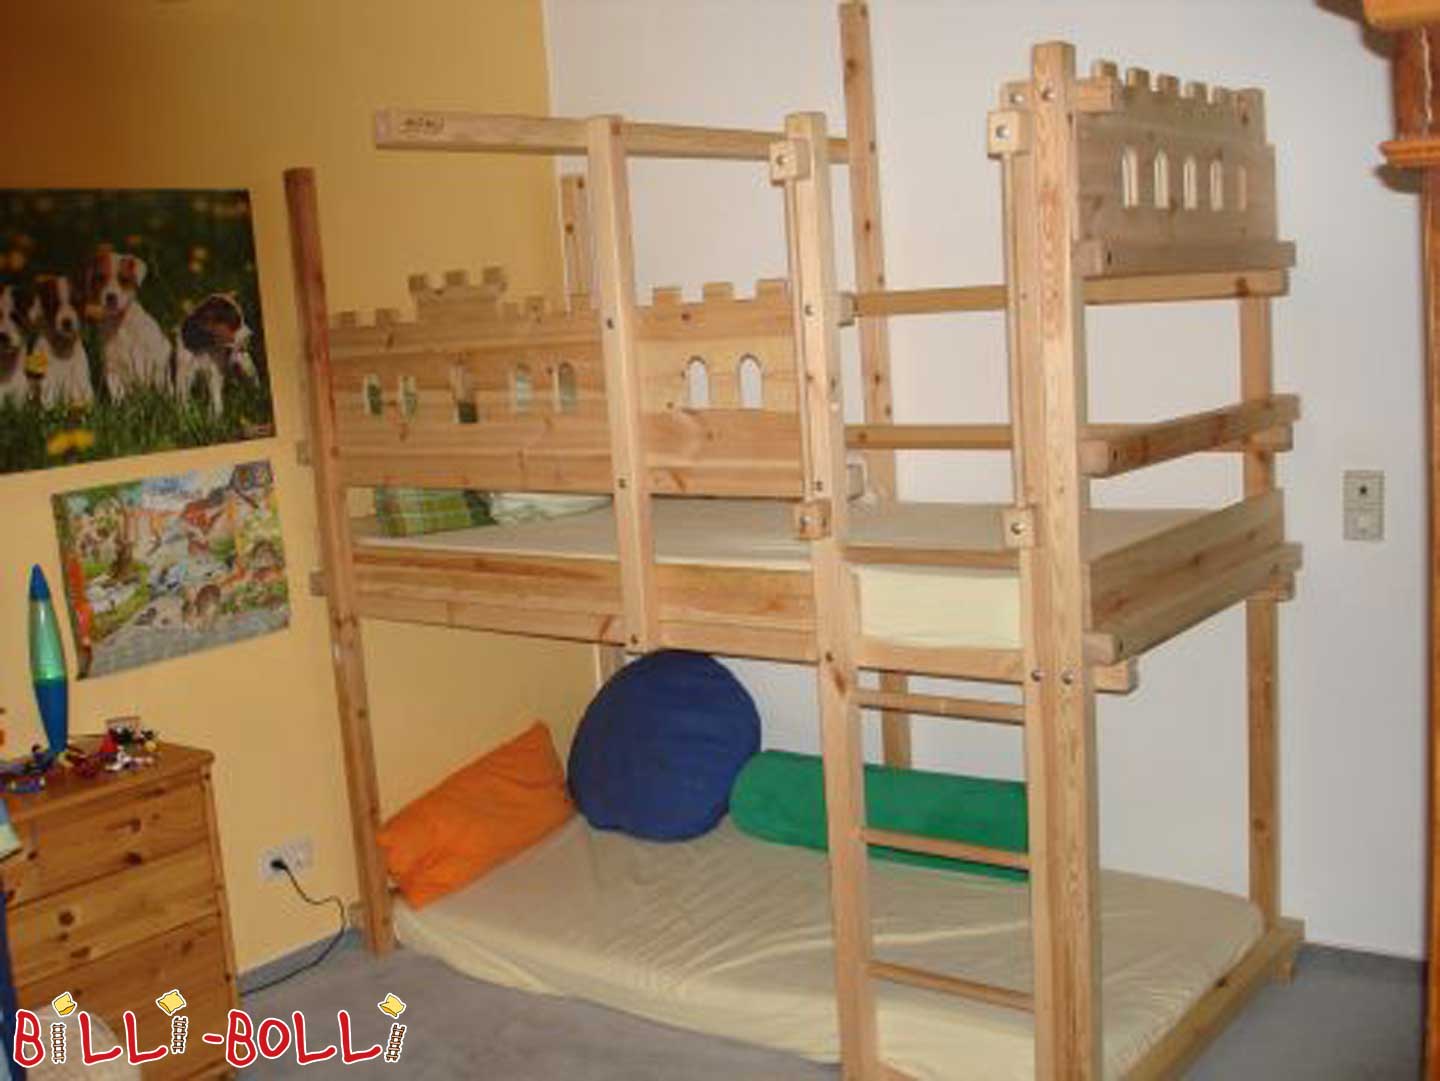 Viteška podstrešna postelja Billi-Bolli, ki raste z otrokom (Kategorija: Uporabljeno podstrešno ležišče)